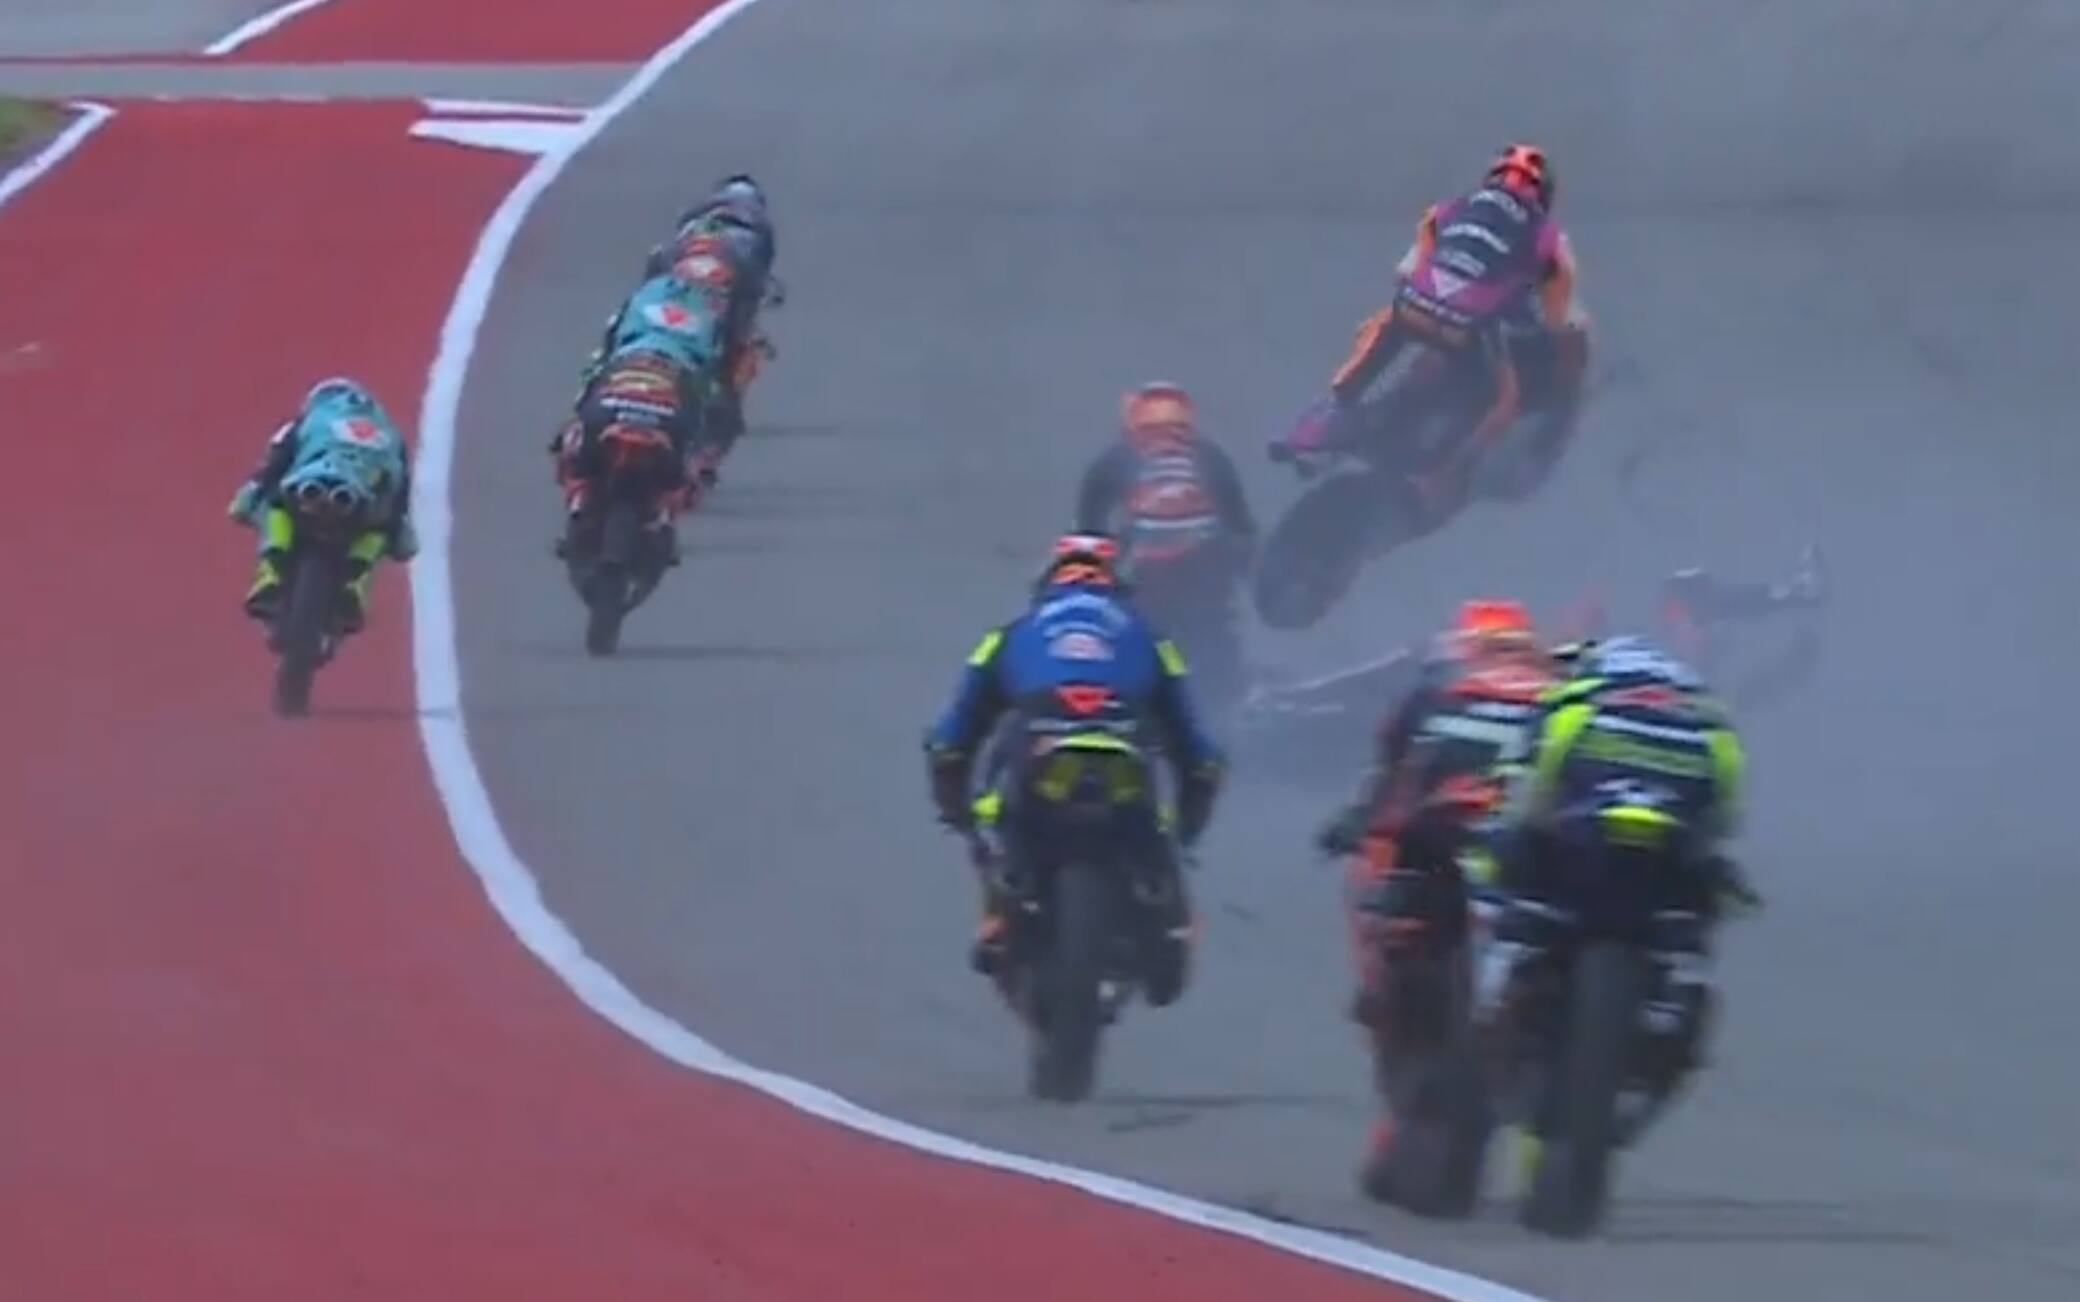 MotoGP, 2021, Texas: Pilotos discutem o acidente de Moto3 em Austin -  MotoSport